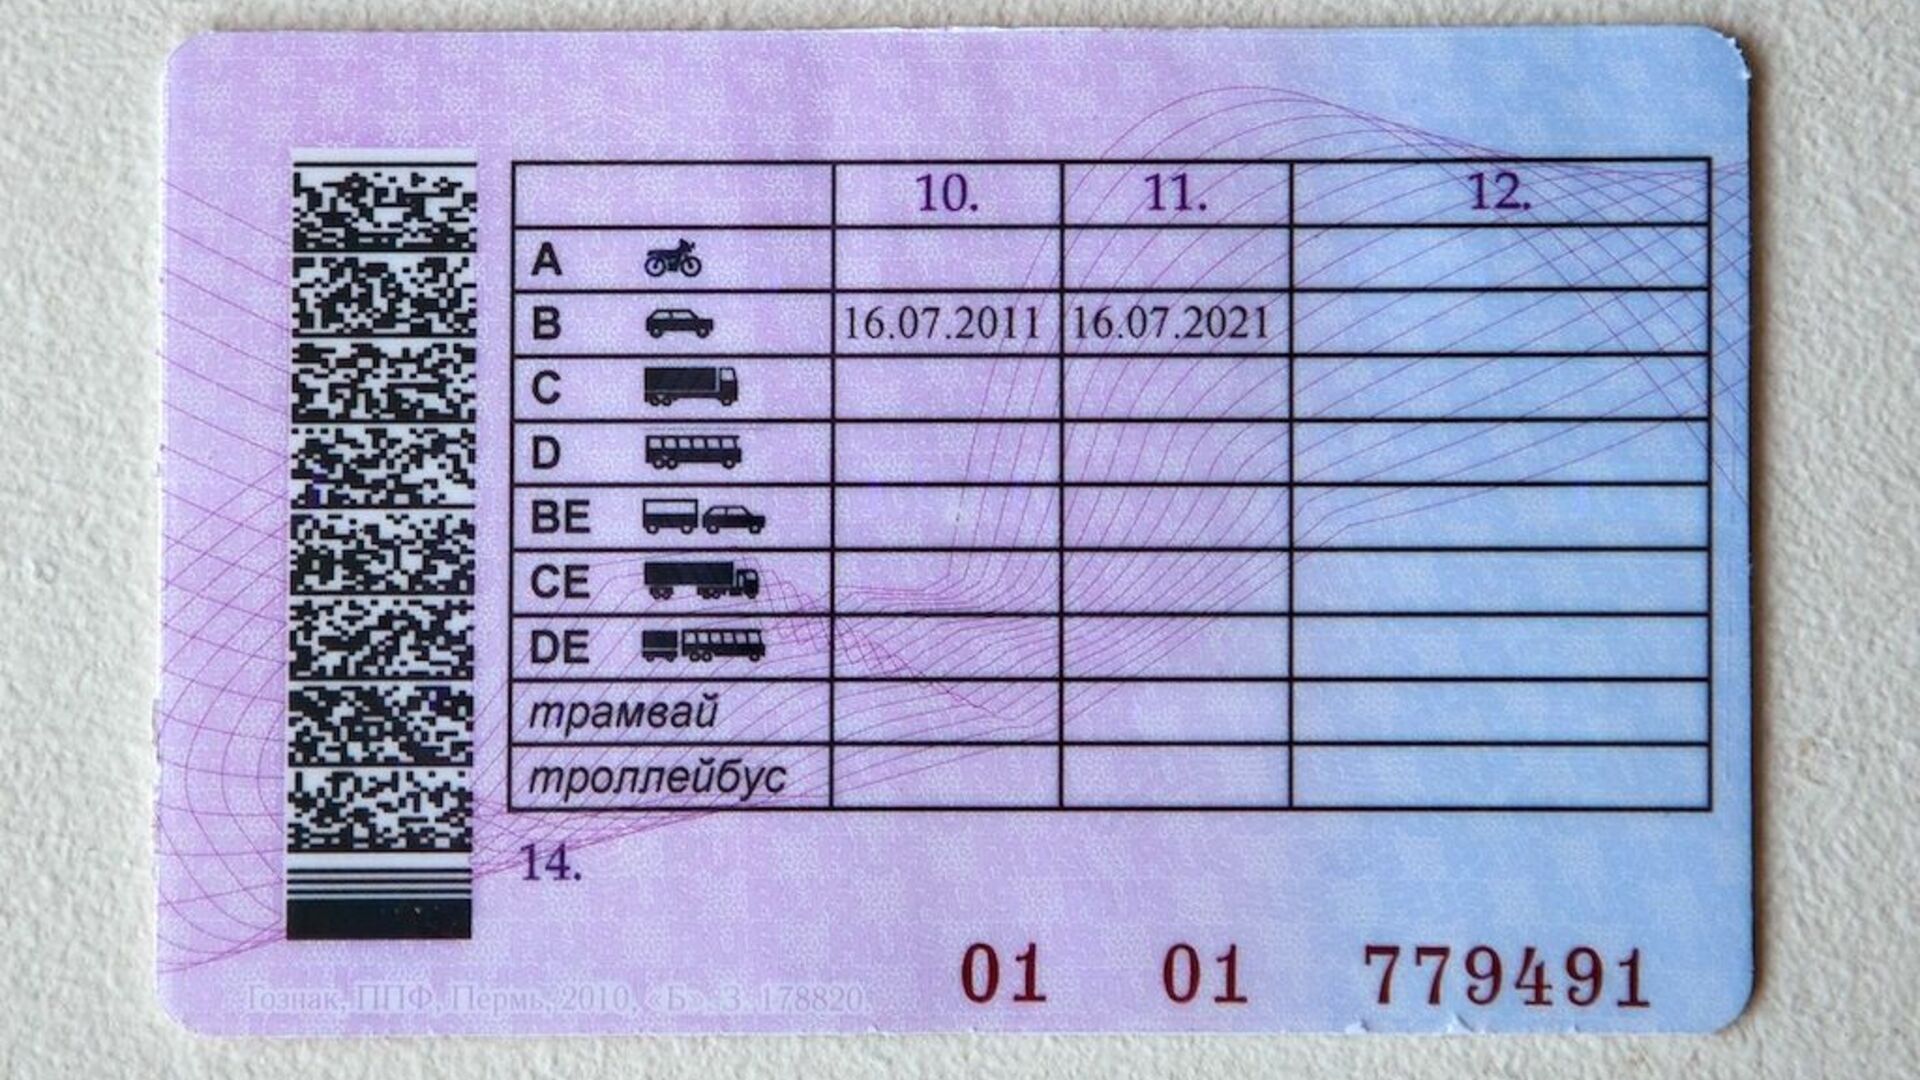 Справа внизу - уникальный номер водительского удостоверения